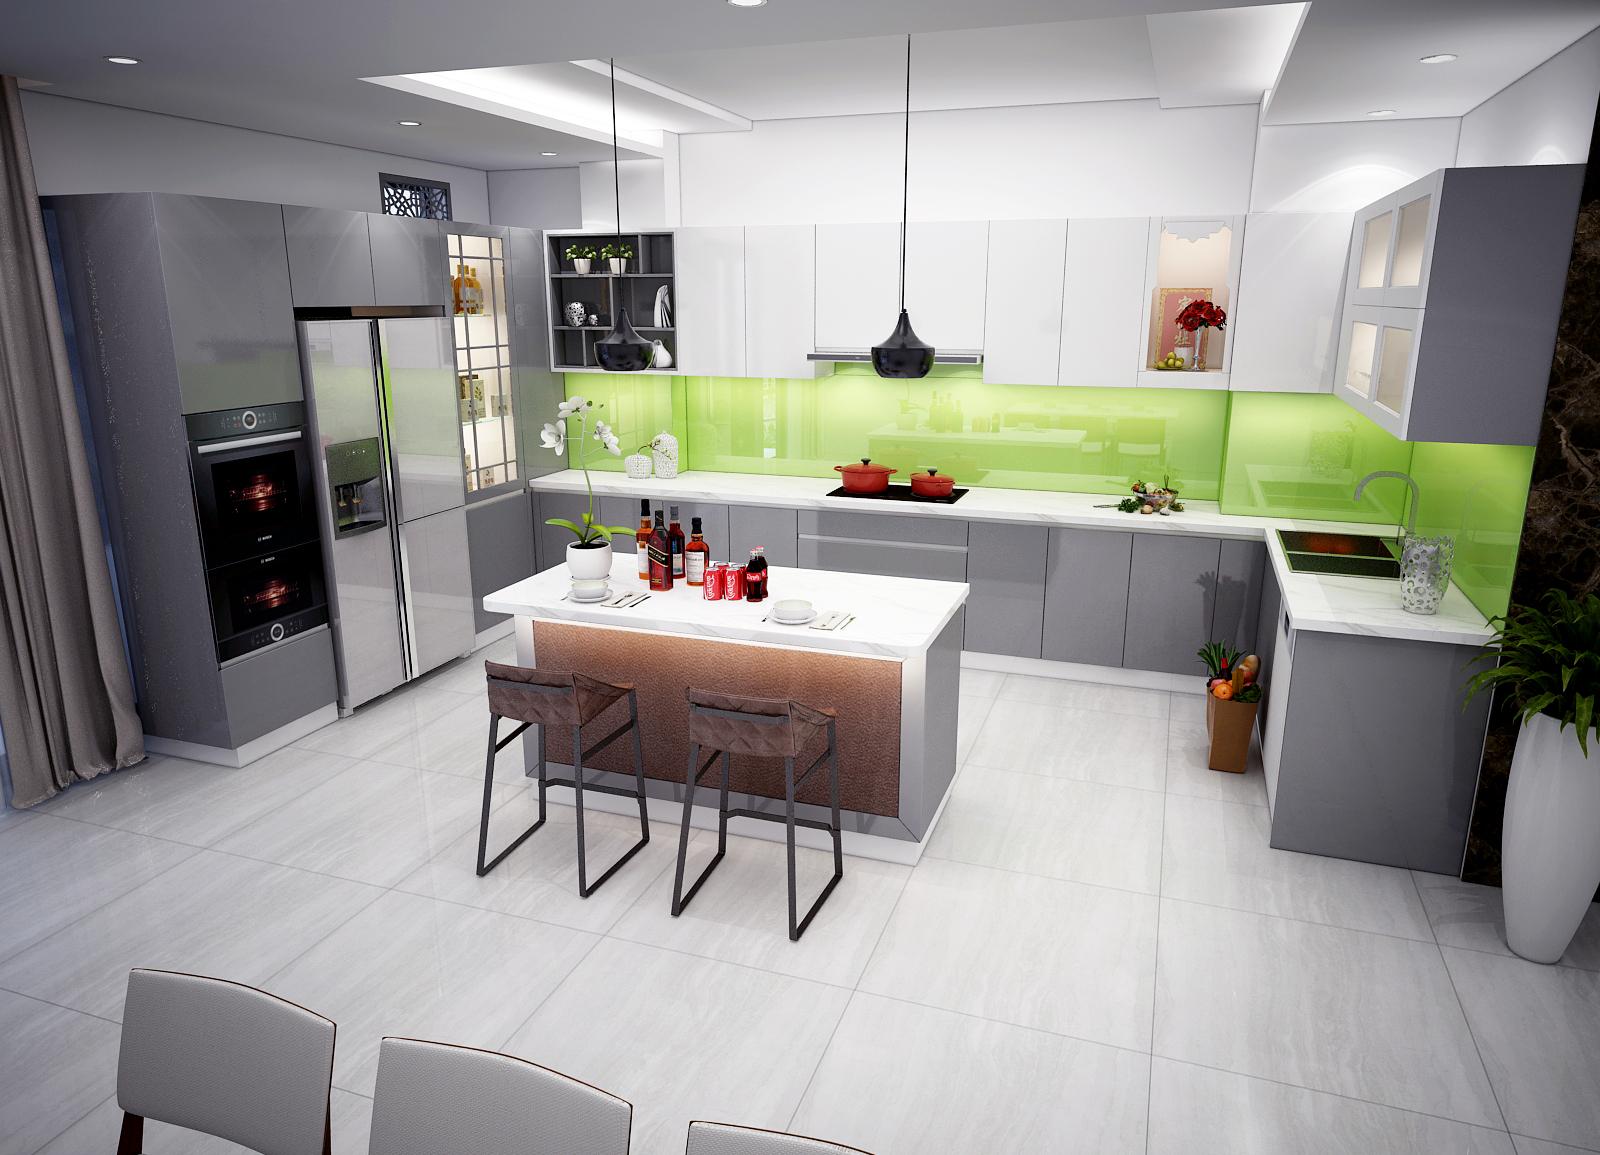 Thiết kế bếp chung cư siêu nhỏ, tận dụng tối đa diện tích